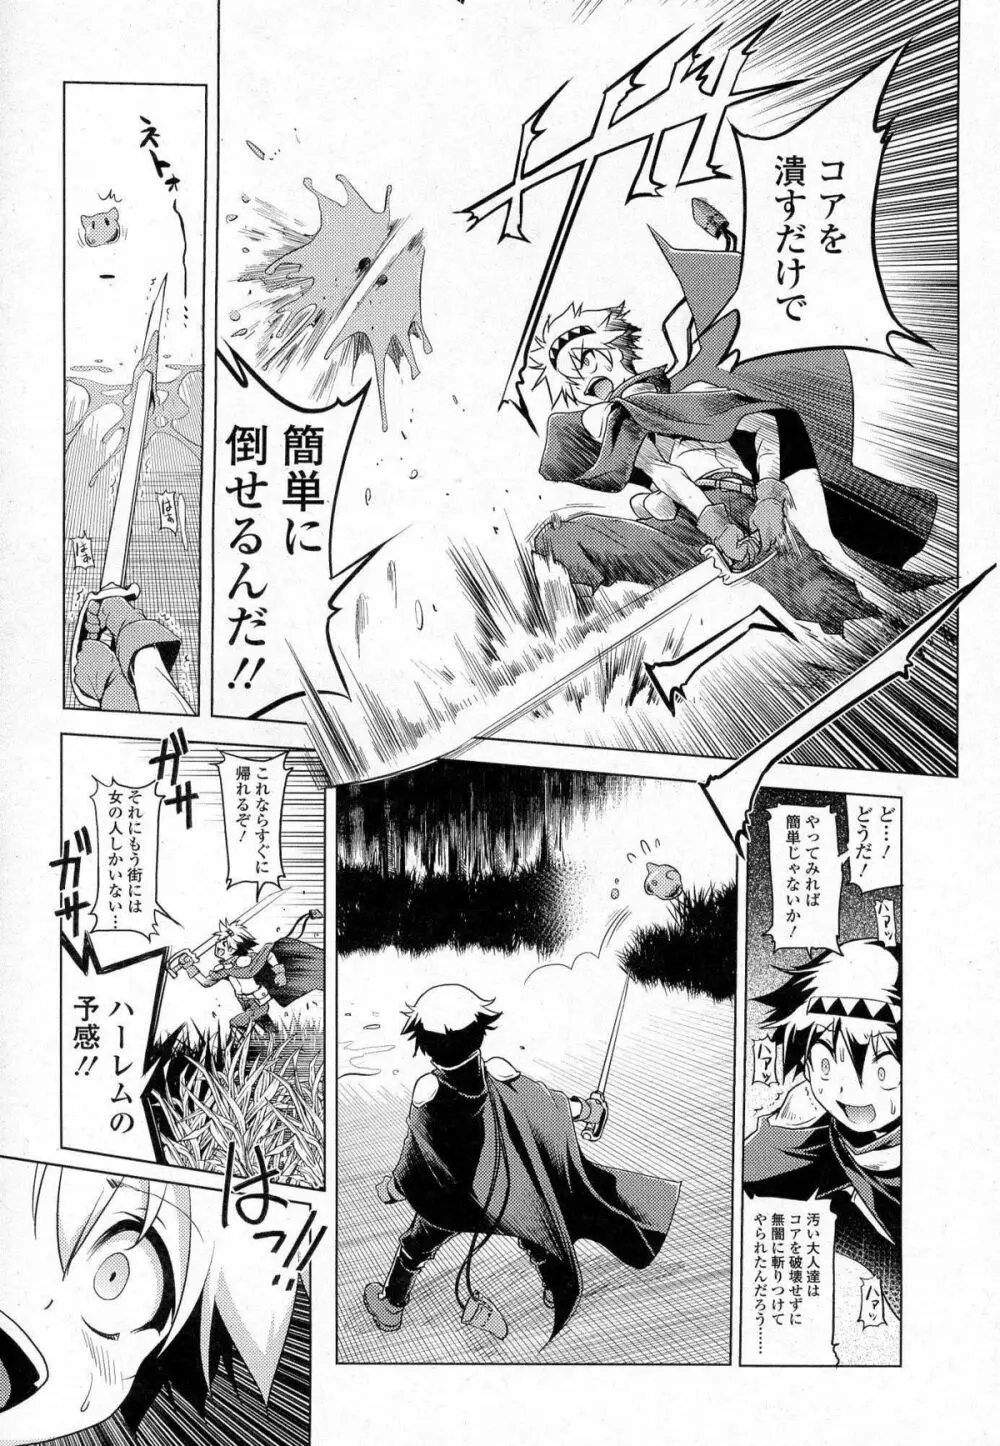 Akazawa RED (あかざわRED)スライム娘の誘惑に負けて更に犯される漫画(上) 2ページ